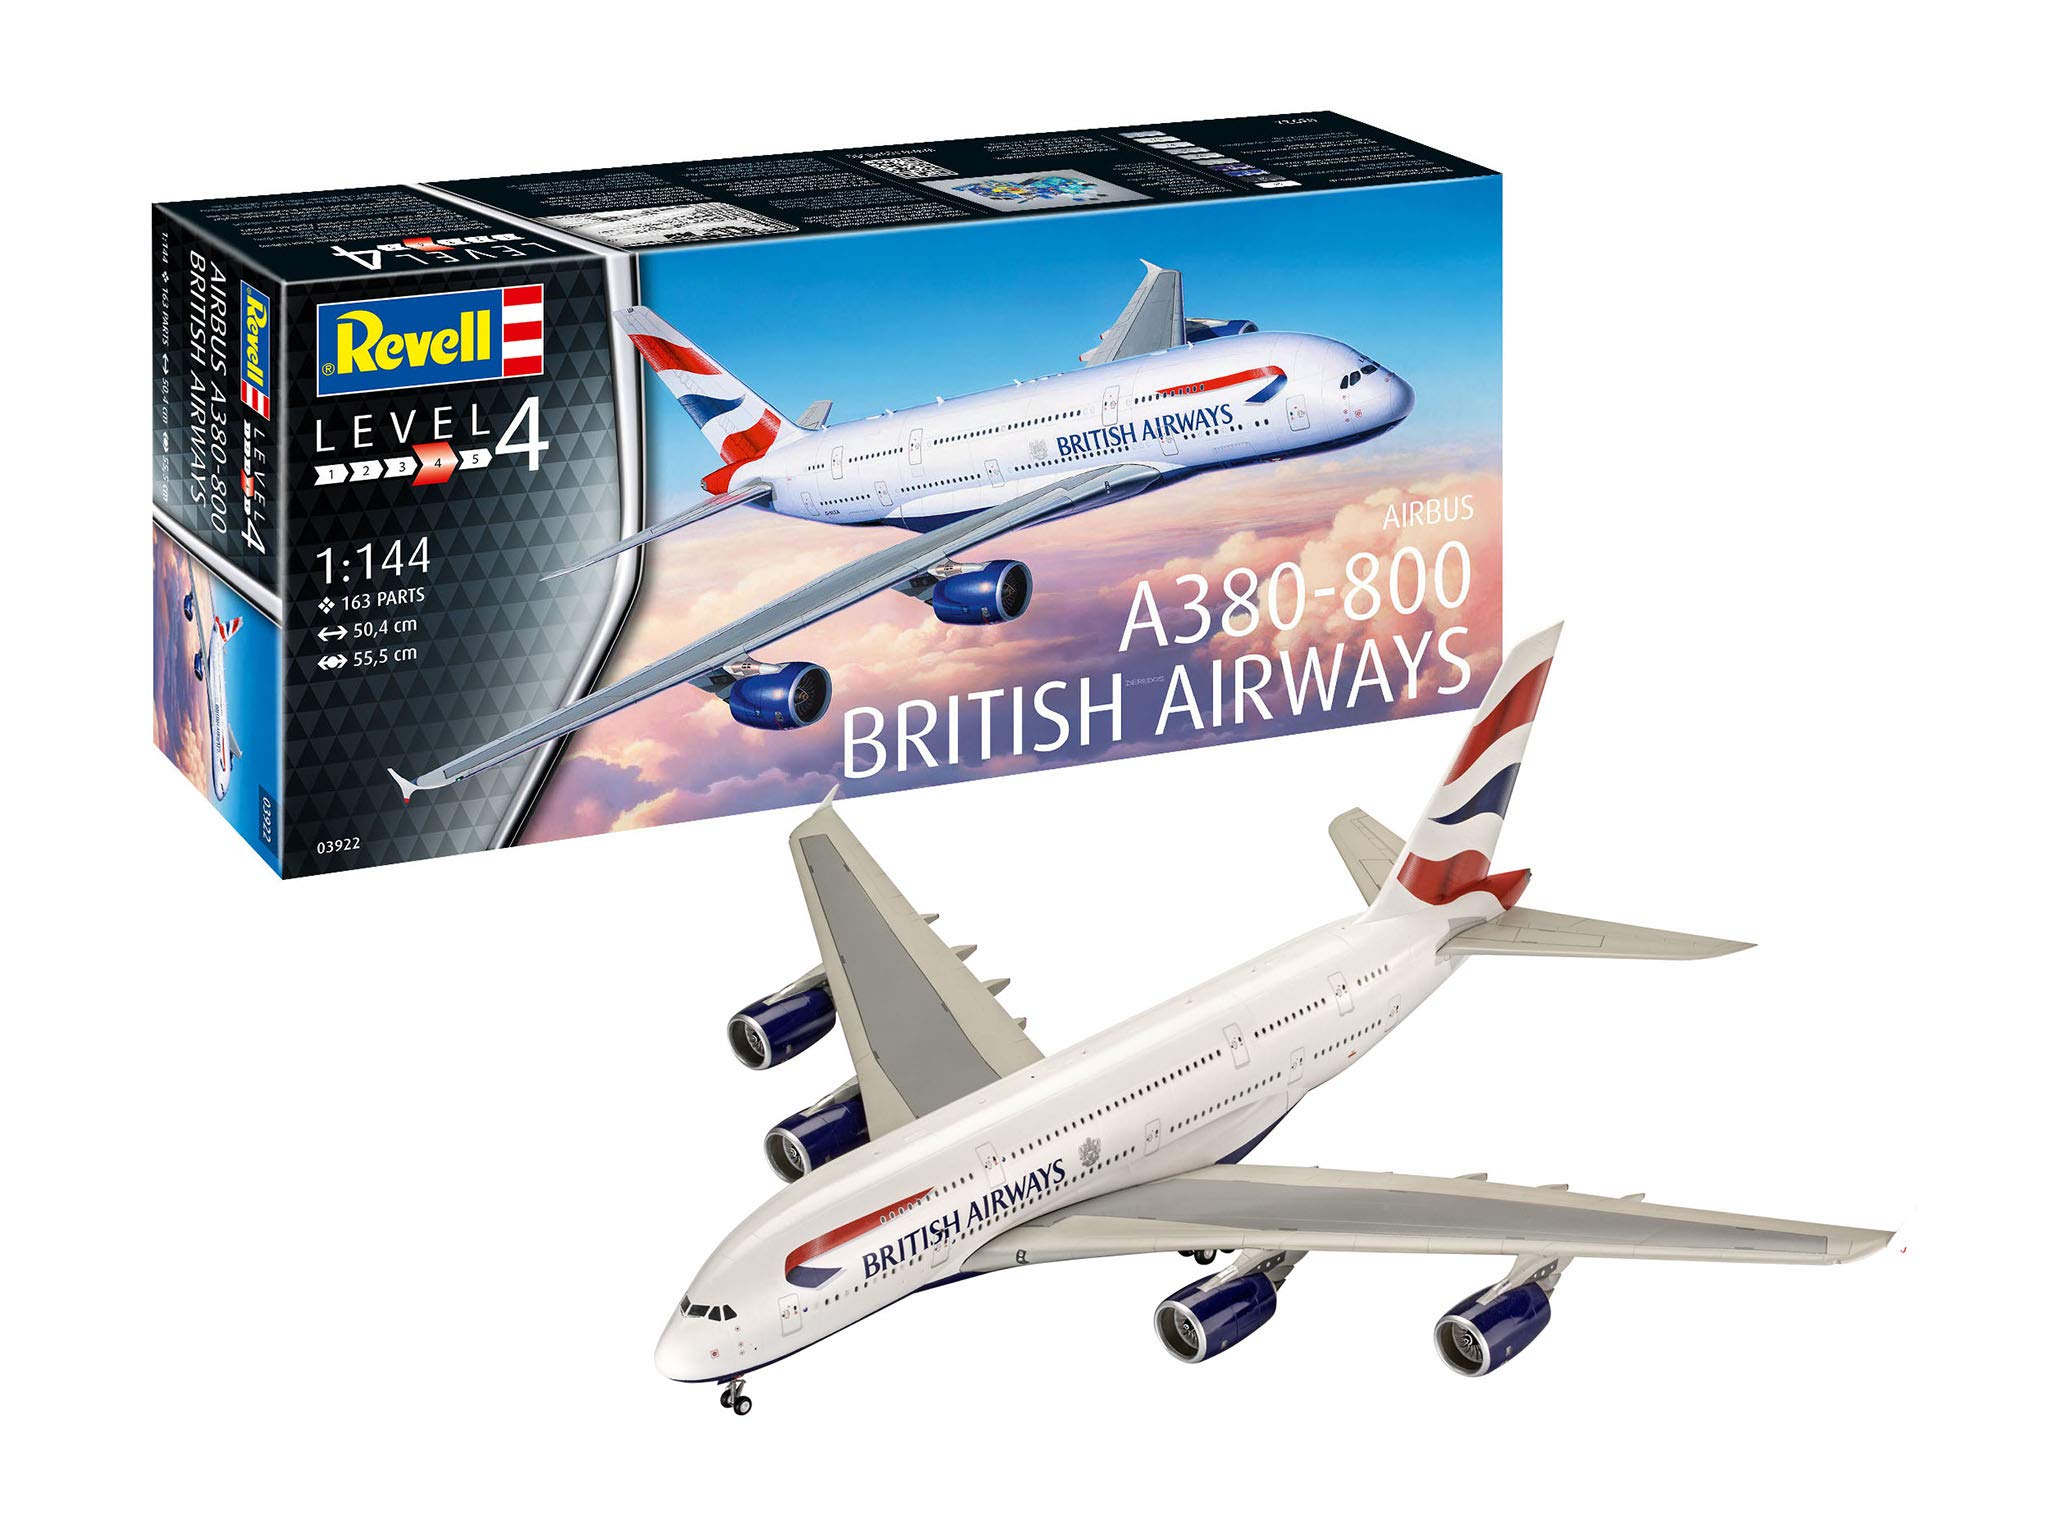 Revell RV03922 3922 Other License 03922 A380-800 British Airways Flugmodell Bausatz 1:144, STK